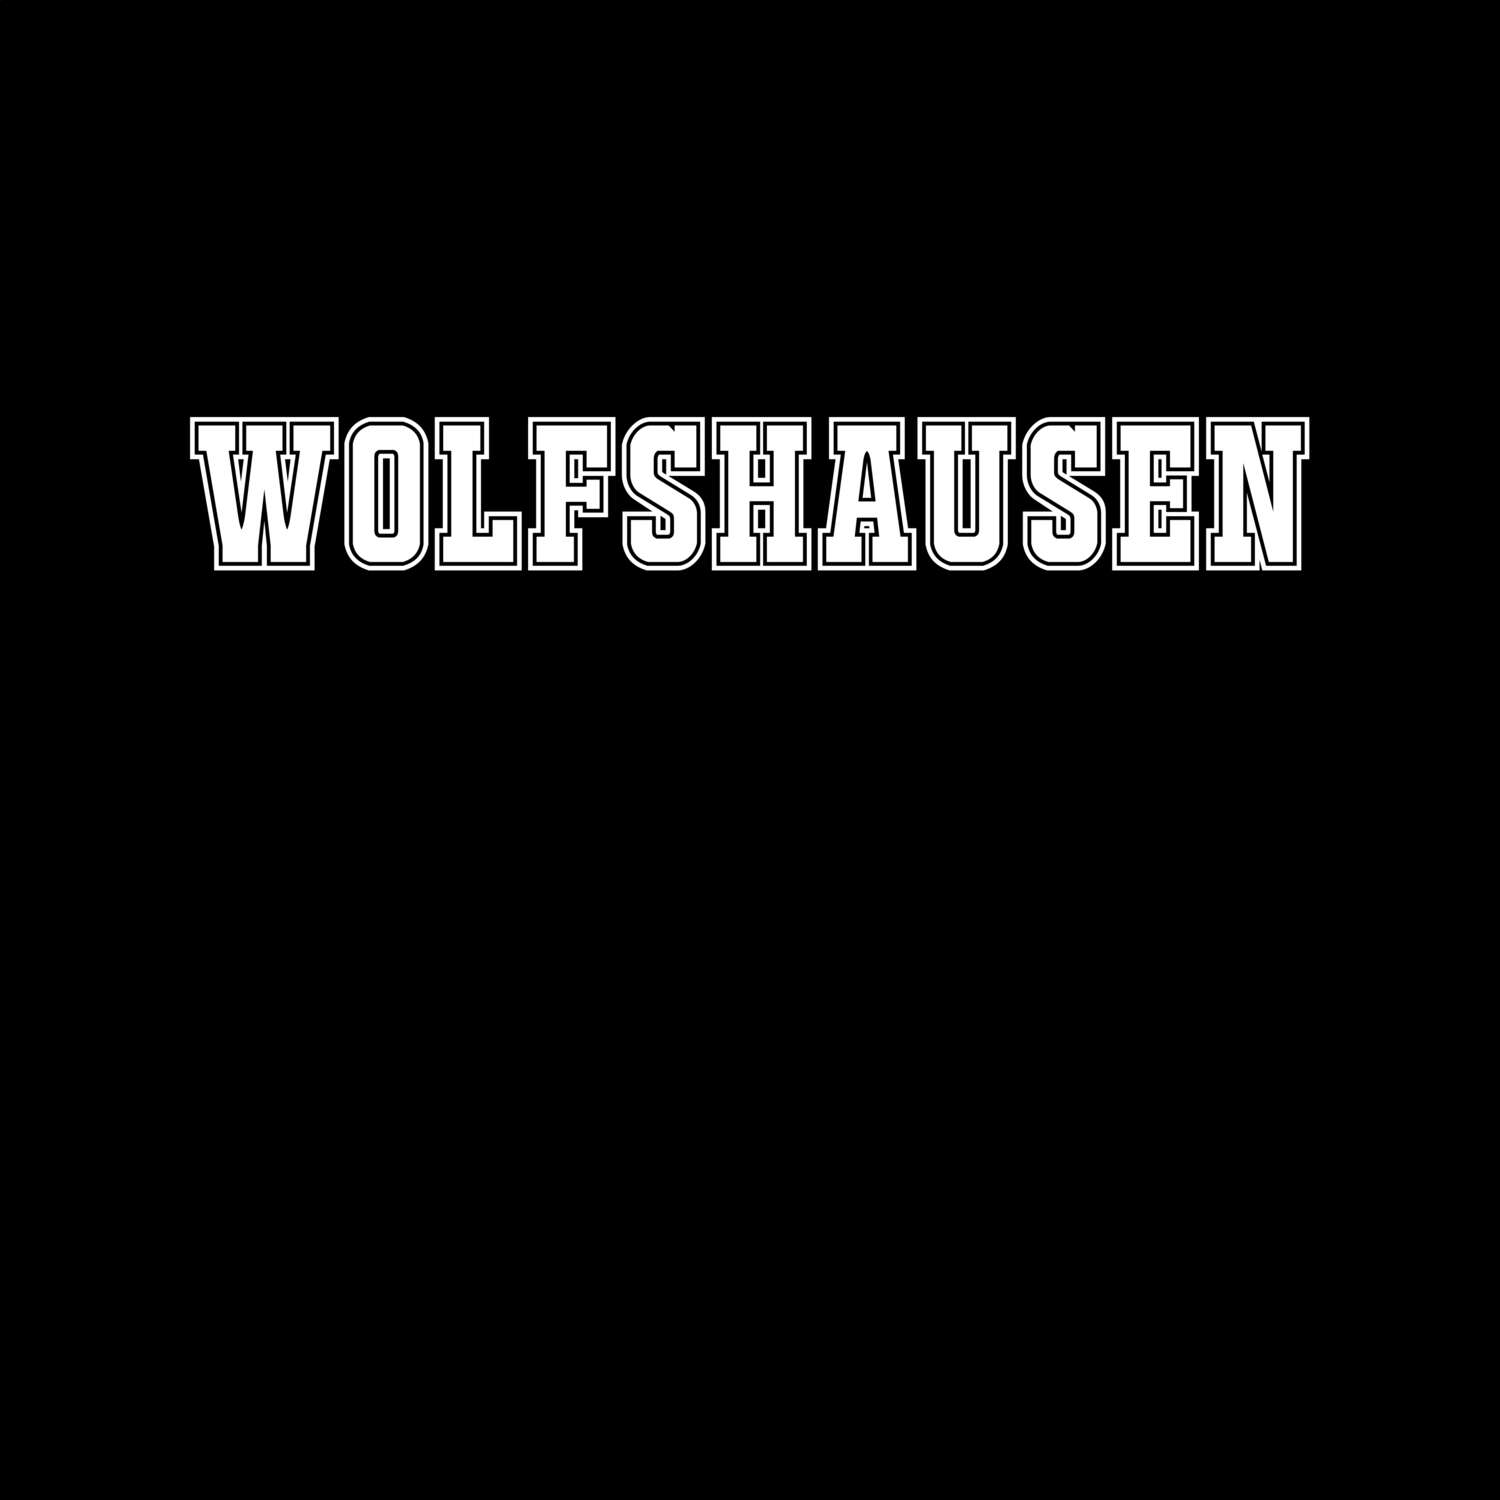 Wolfshausen T-Shirt »Classic«